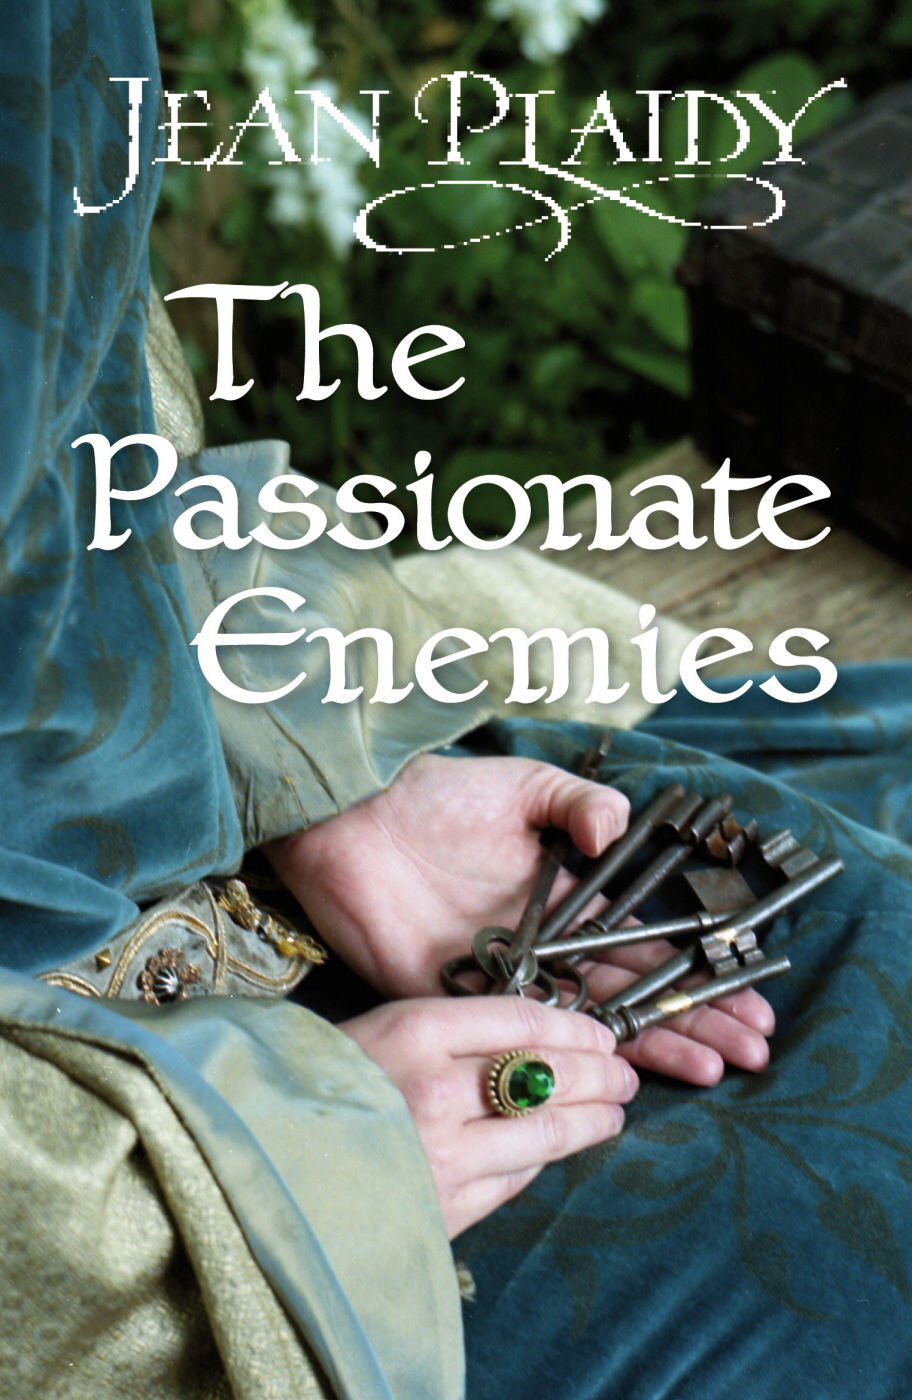 The Passionate Enemies (2012)